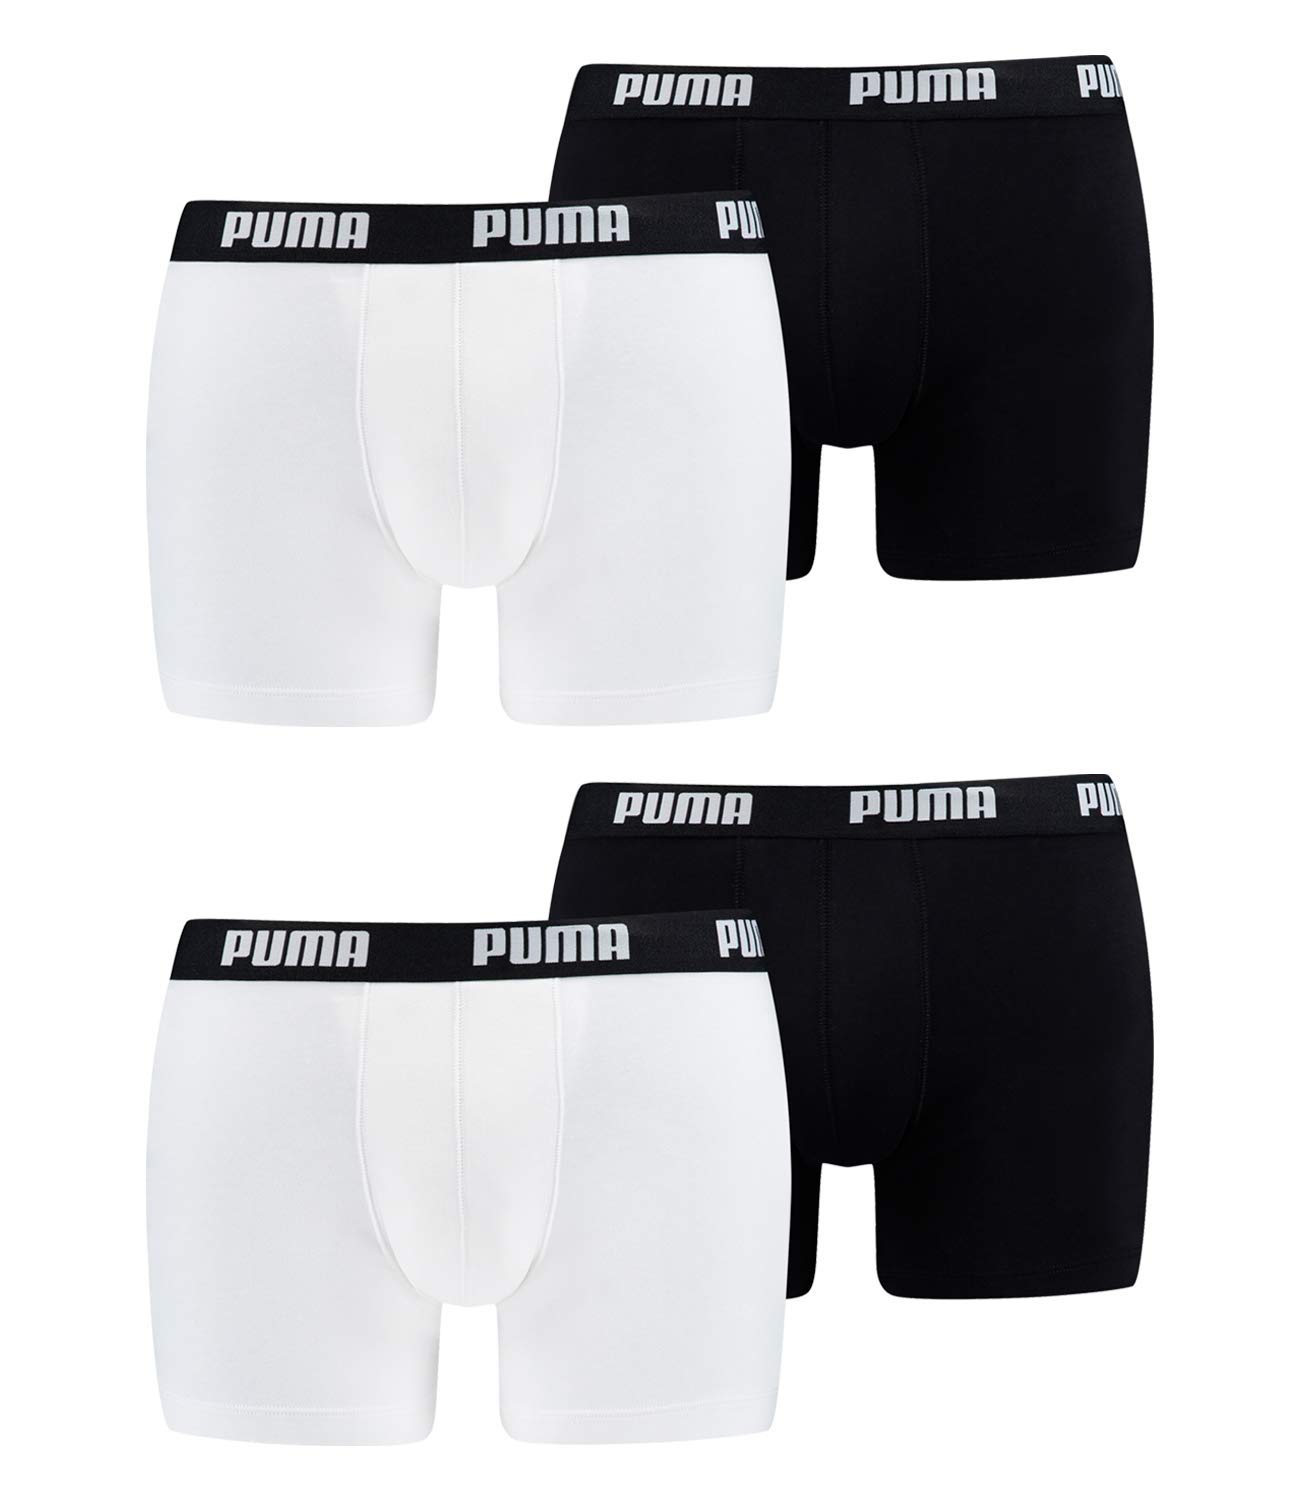 PUMA Herren Boxer Short Boxershort 4er Pack Größe S - XXL White/Black NEU, Größe:XXL